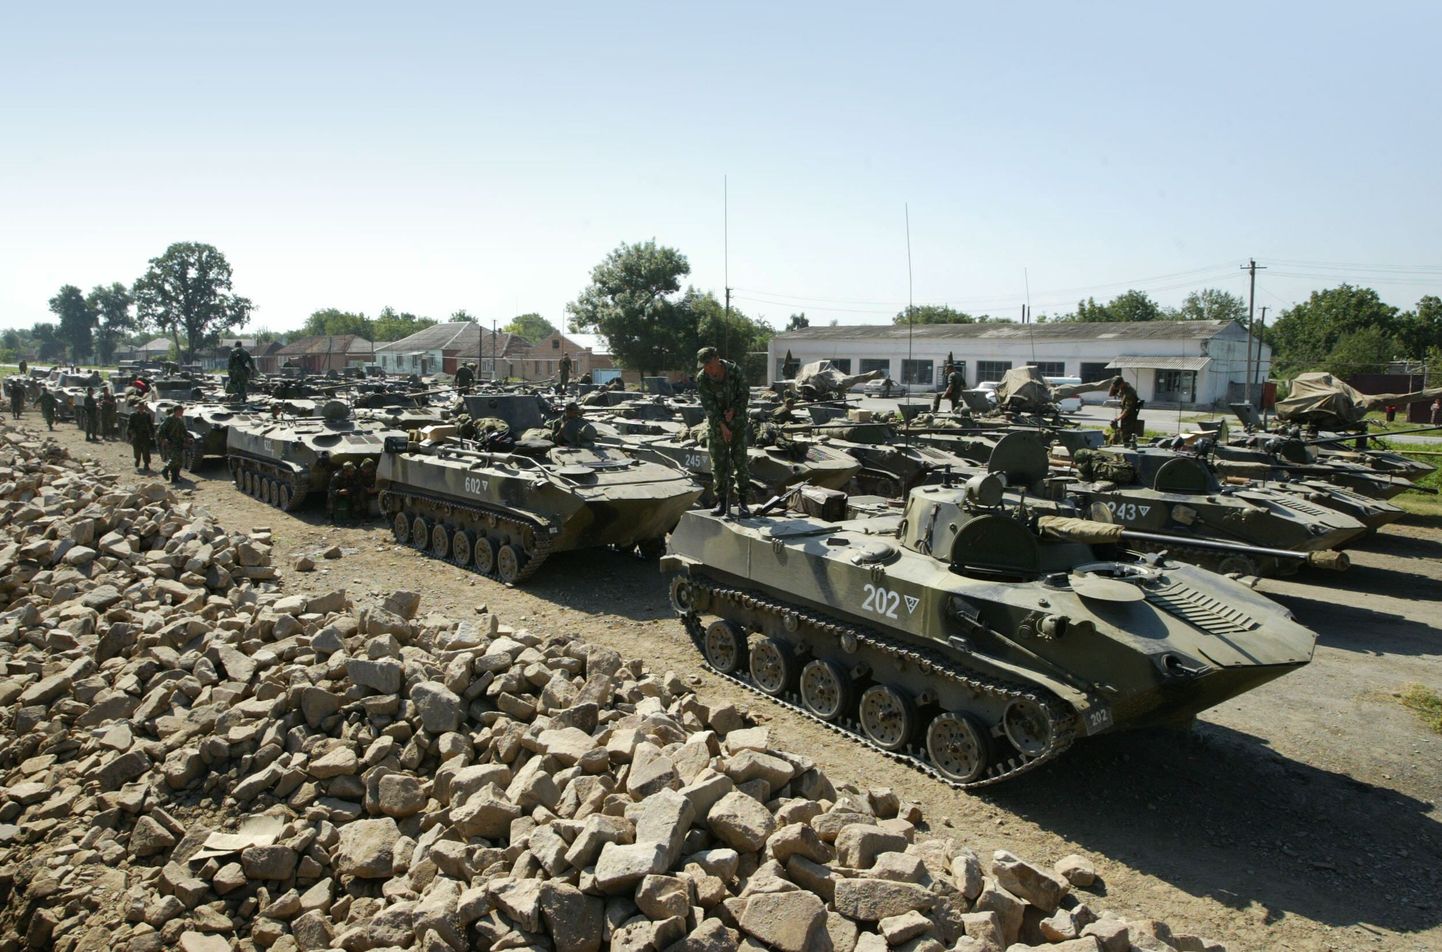 Venemaa dessantväelased on avaldanud valmisolekut vajaduse korral konfliktipiirkonnas sekkuda.